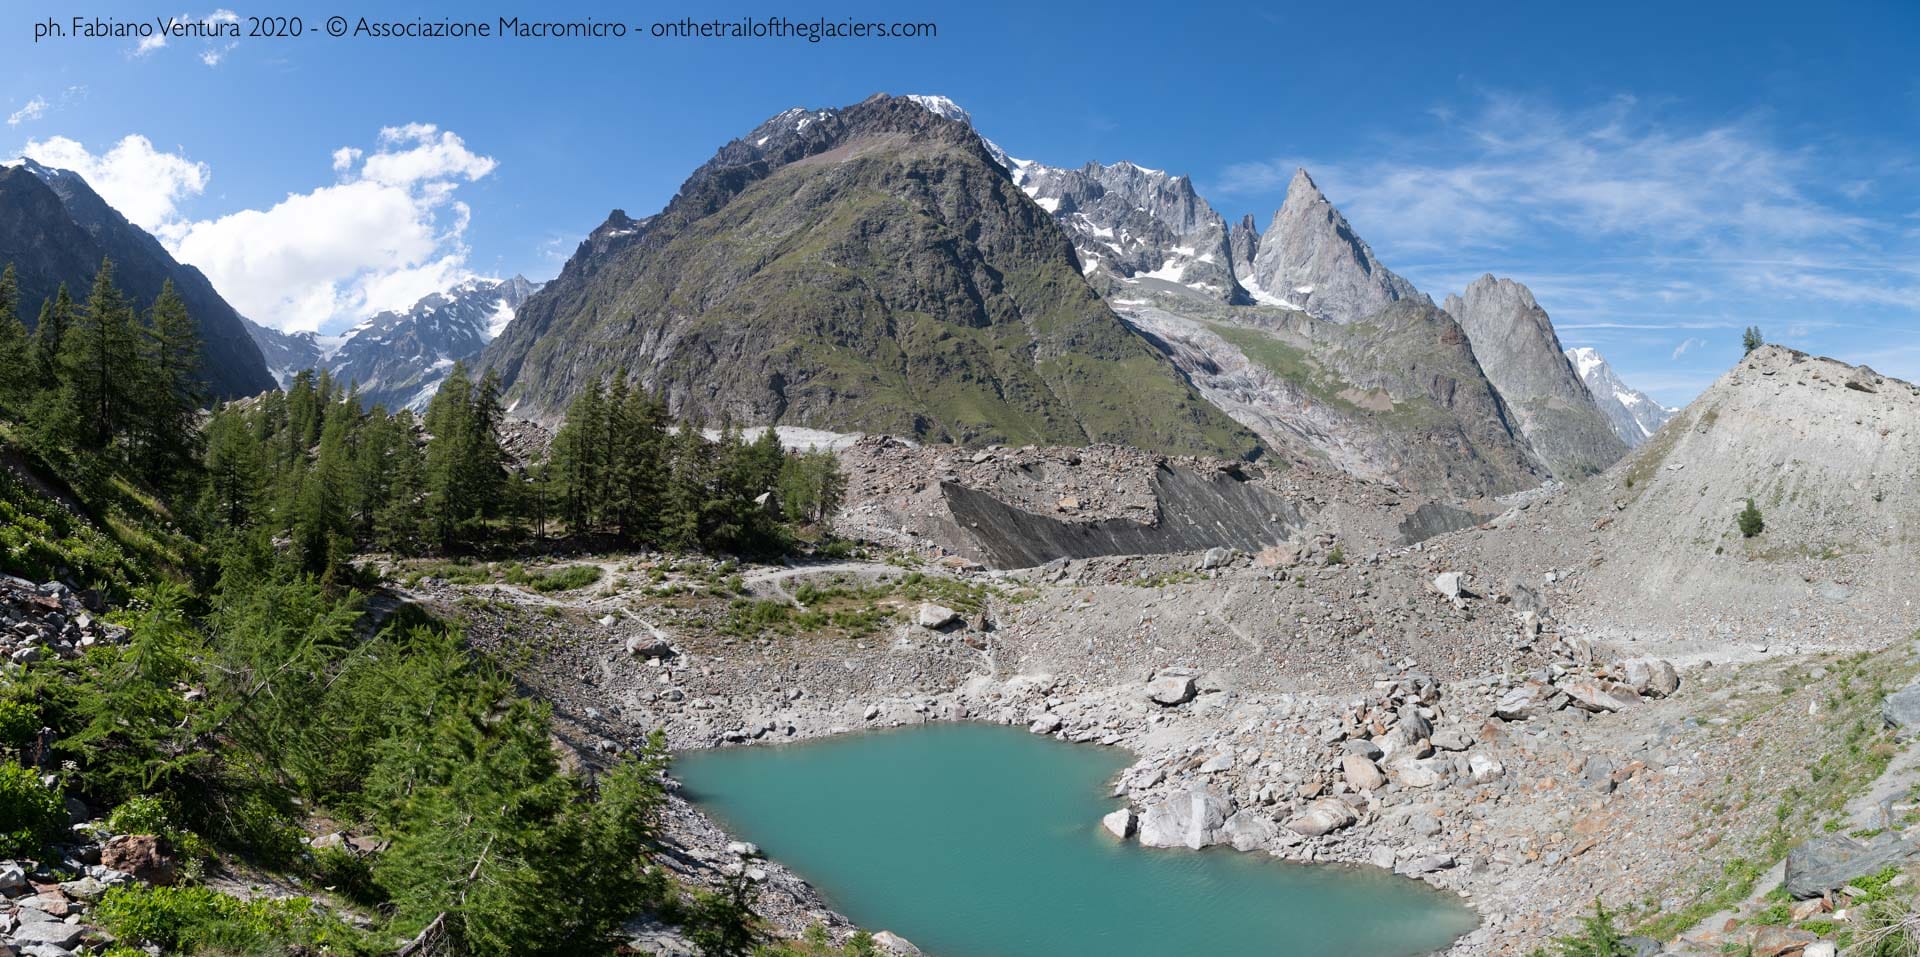 "Sulle tracce dei ghiacciai - Alpi 2020". Panorama. Foto di Fabiano Ventura © Associazione Macromicro - onthetrailoftheglaciers.com